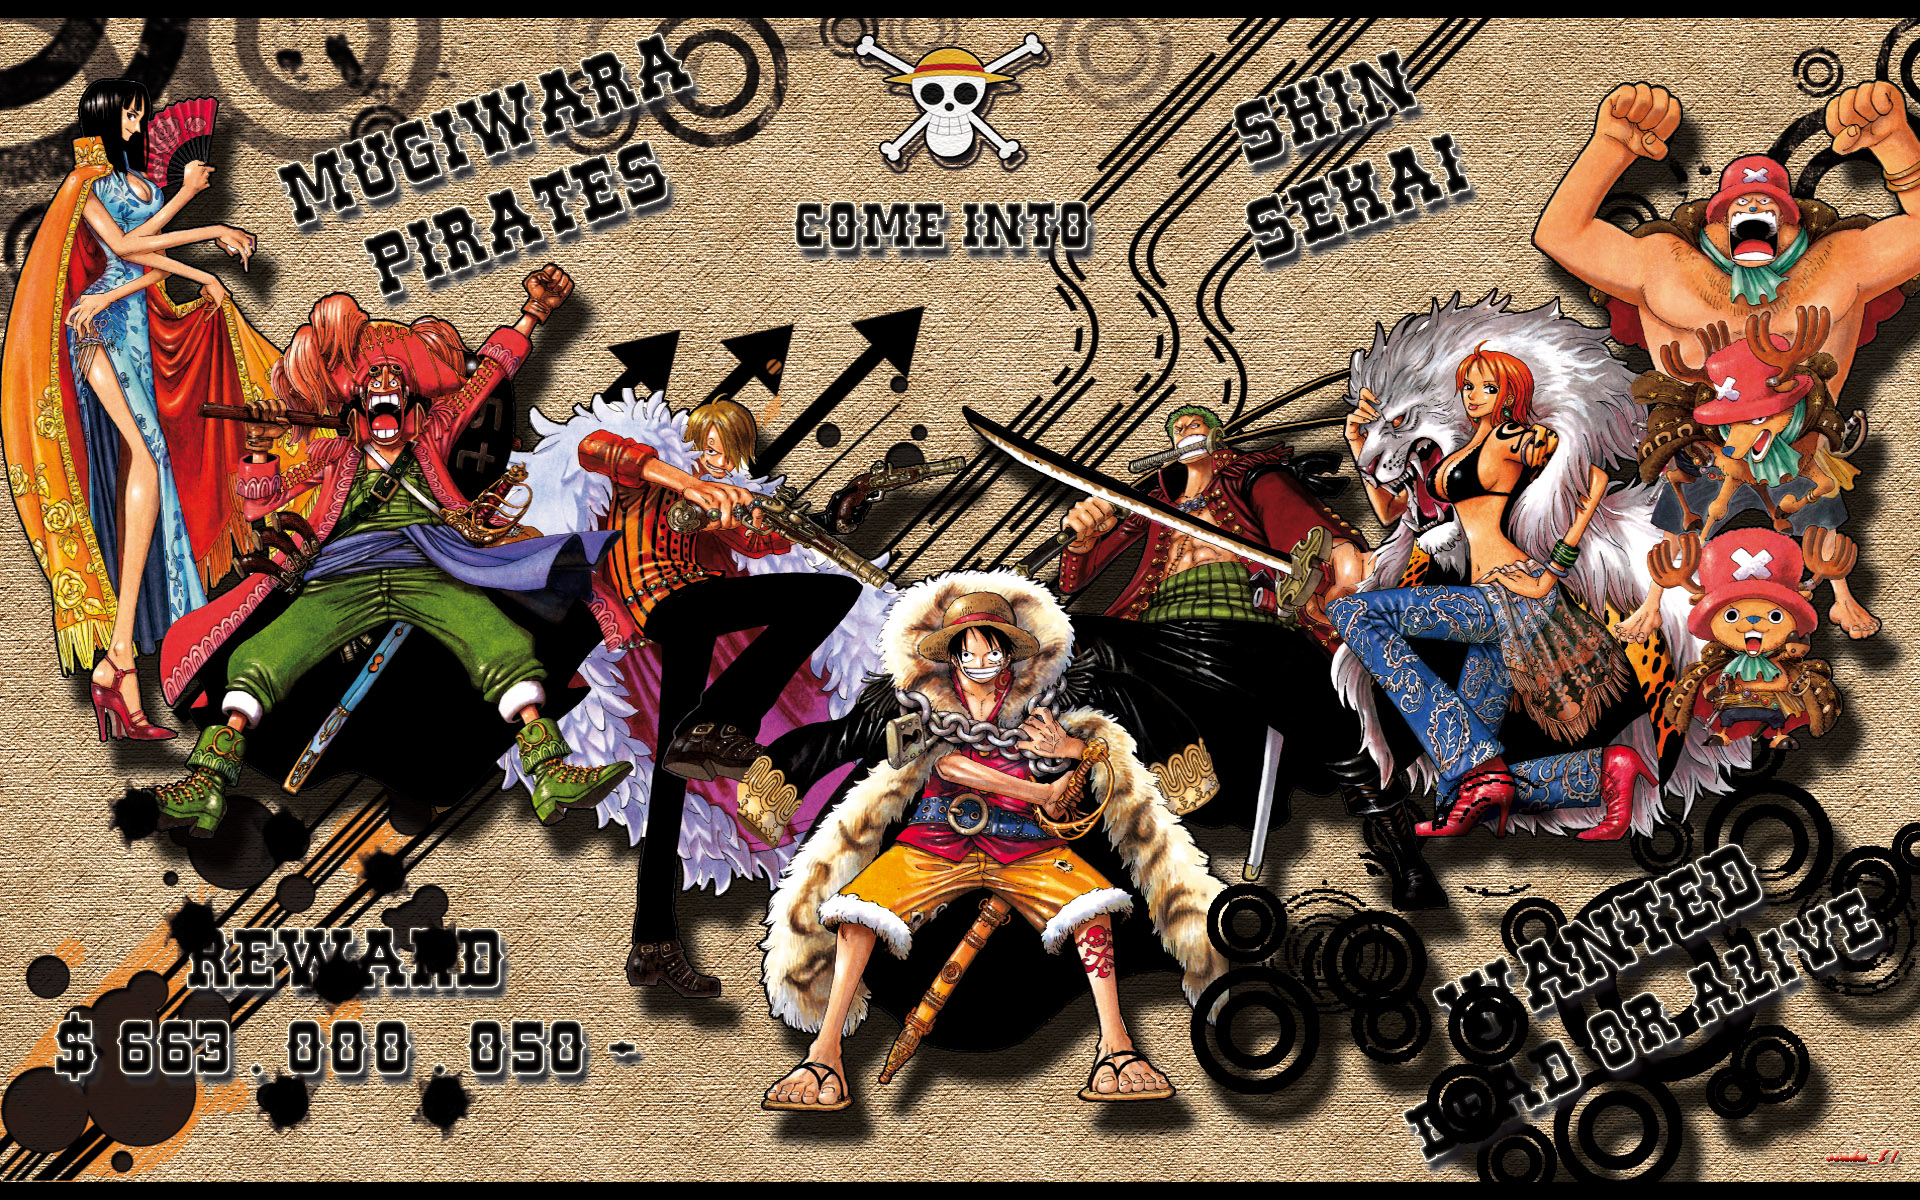 One Piece ワンピース 10thシーズン スリラーバーク篇 Piece 11 エイベックス マーケティング 価格 揚子江のイルカ